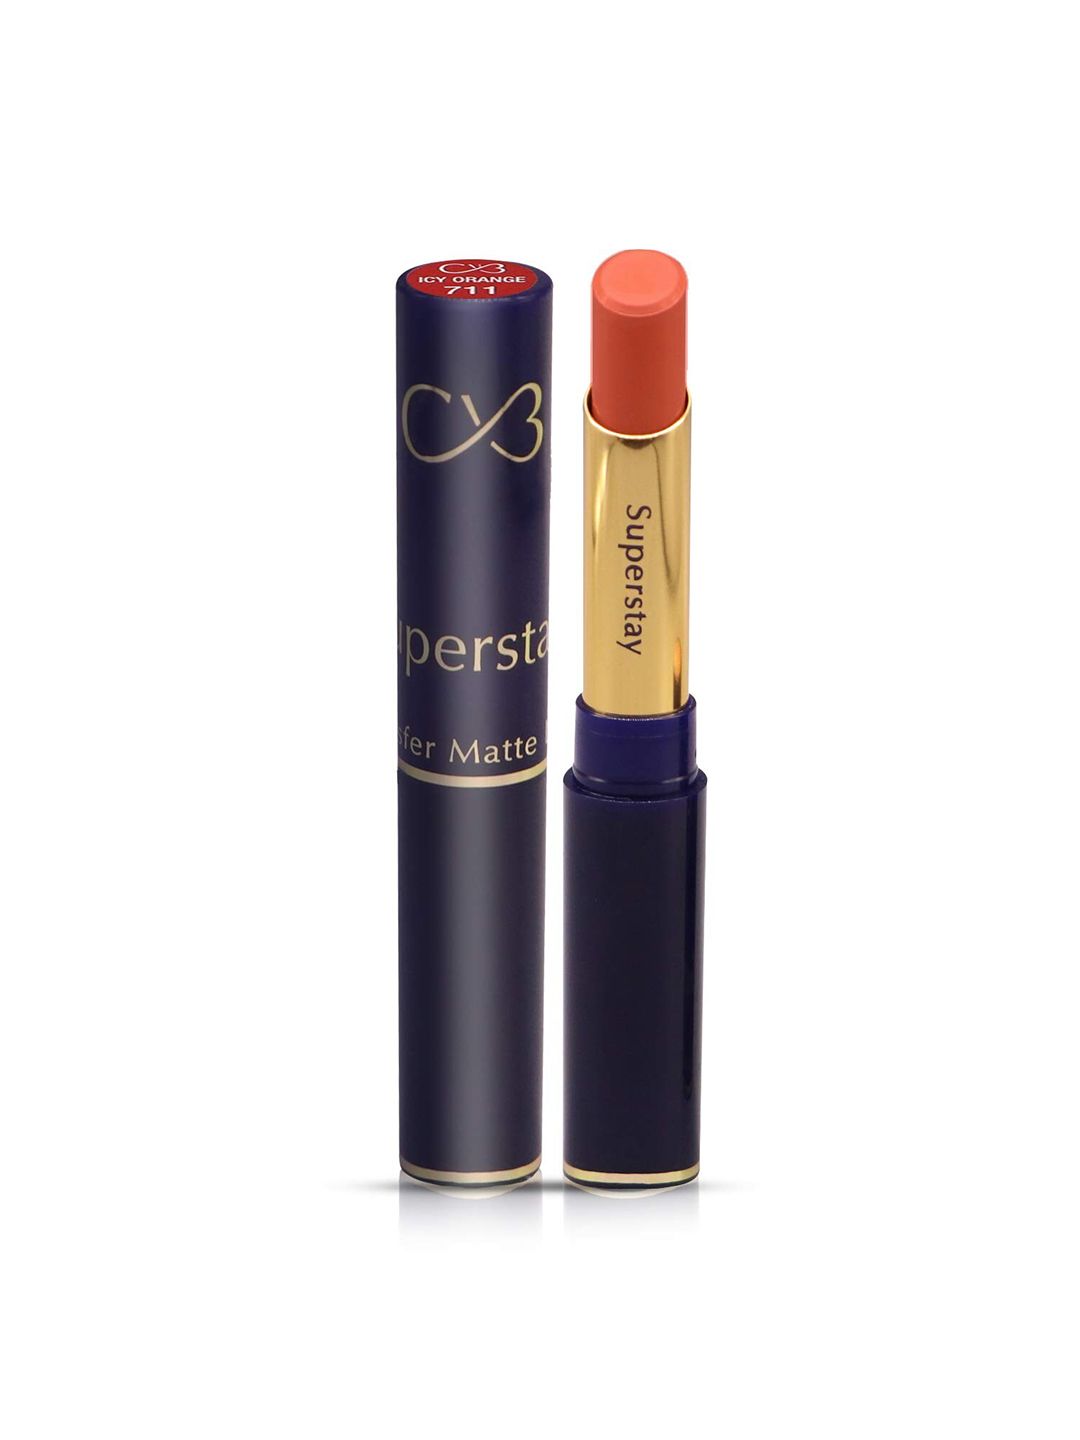 CVB Super Stay Non-Transfer Matte Lipstick 3.5 g - Icy Orange 711 Price in India